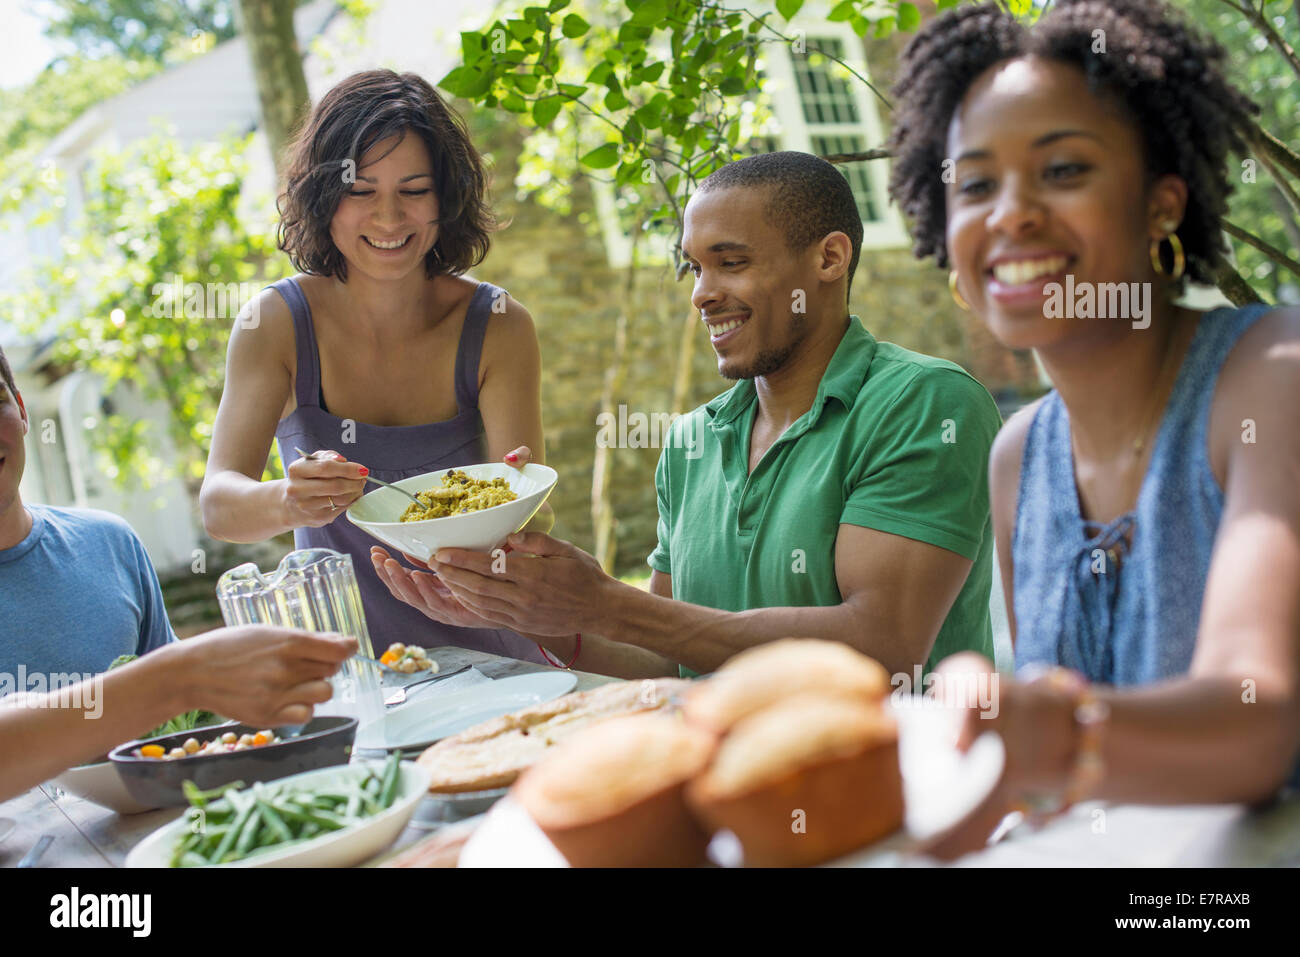 Una reunión familiar, hombres, mujeres y niños alrededor de una mesa en el jardín en verano. Foto de stock